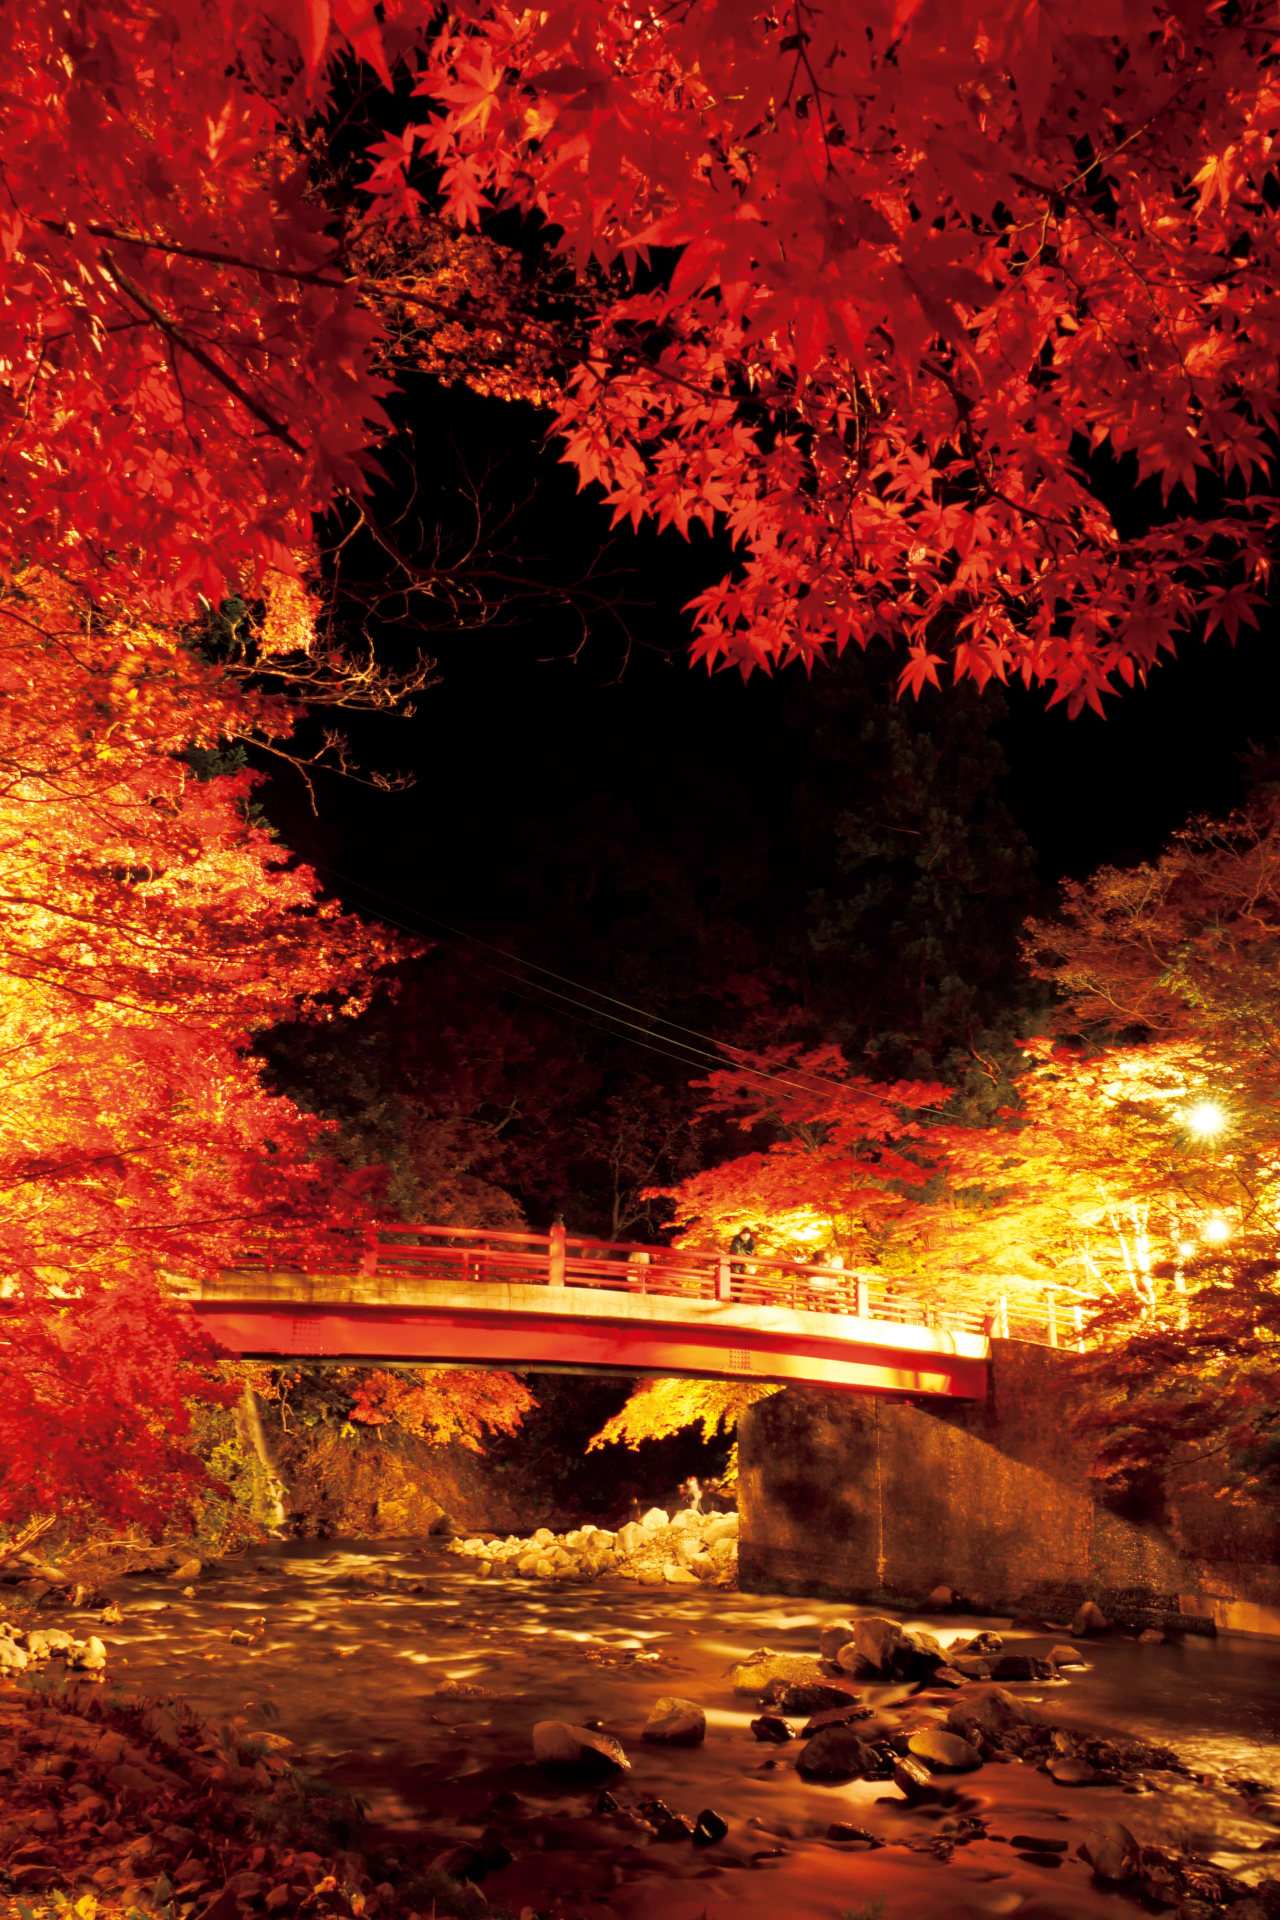 じゃらん、夜の紅葉絶景ランキング。1位は青森県「中野もみじ山